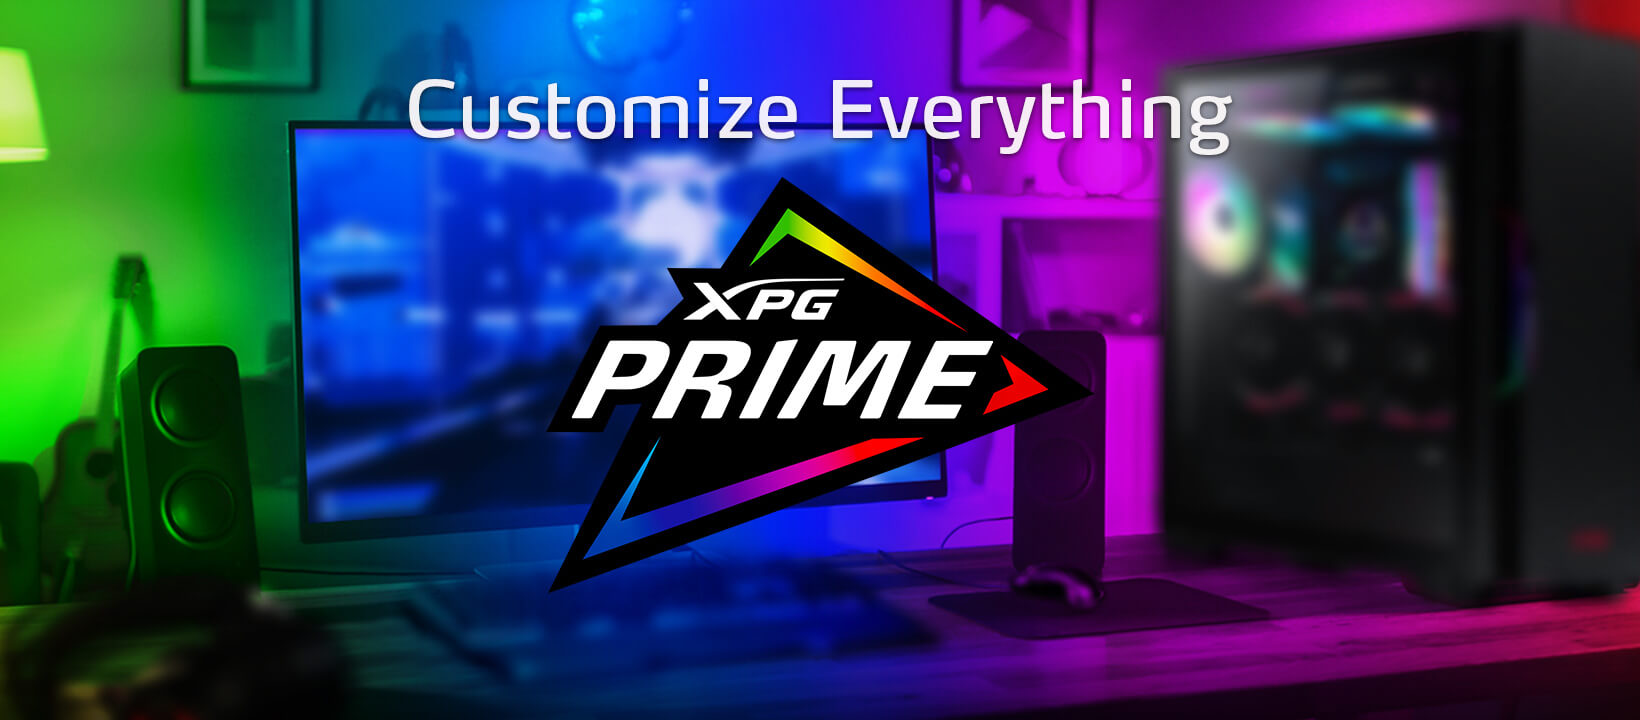 XPG Customize Everything